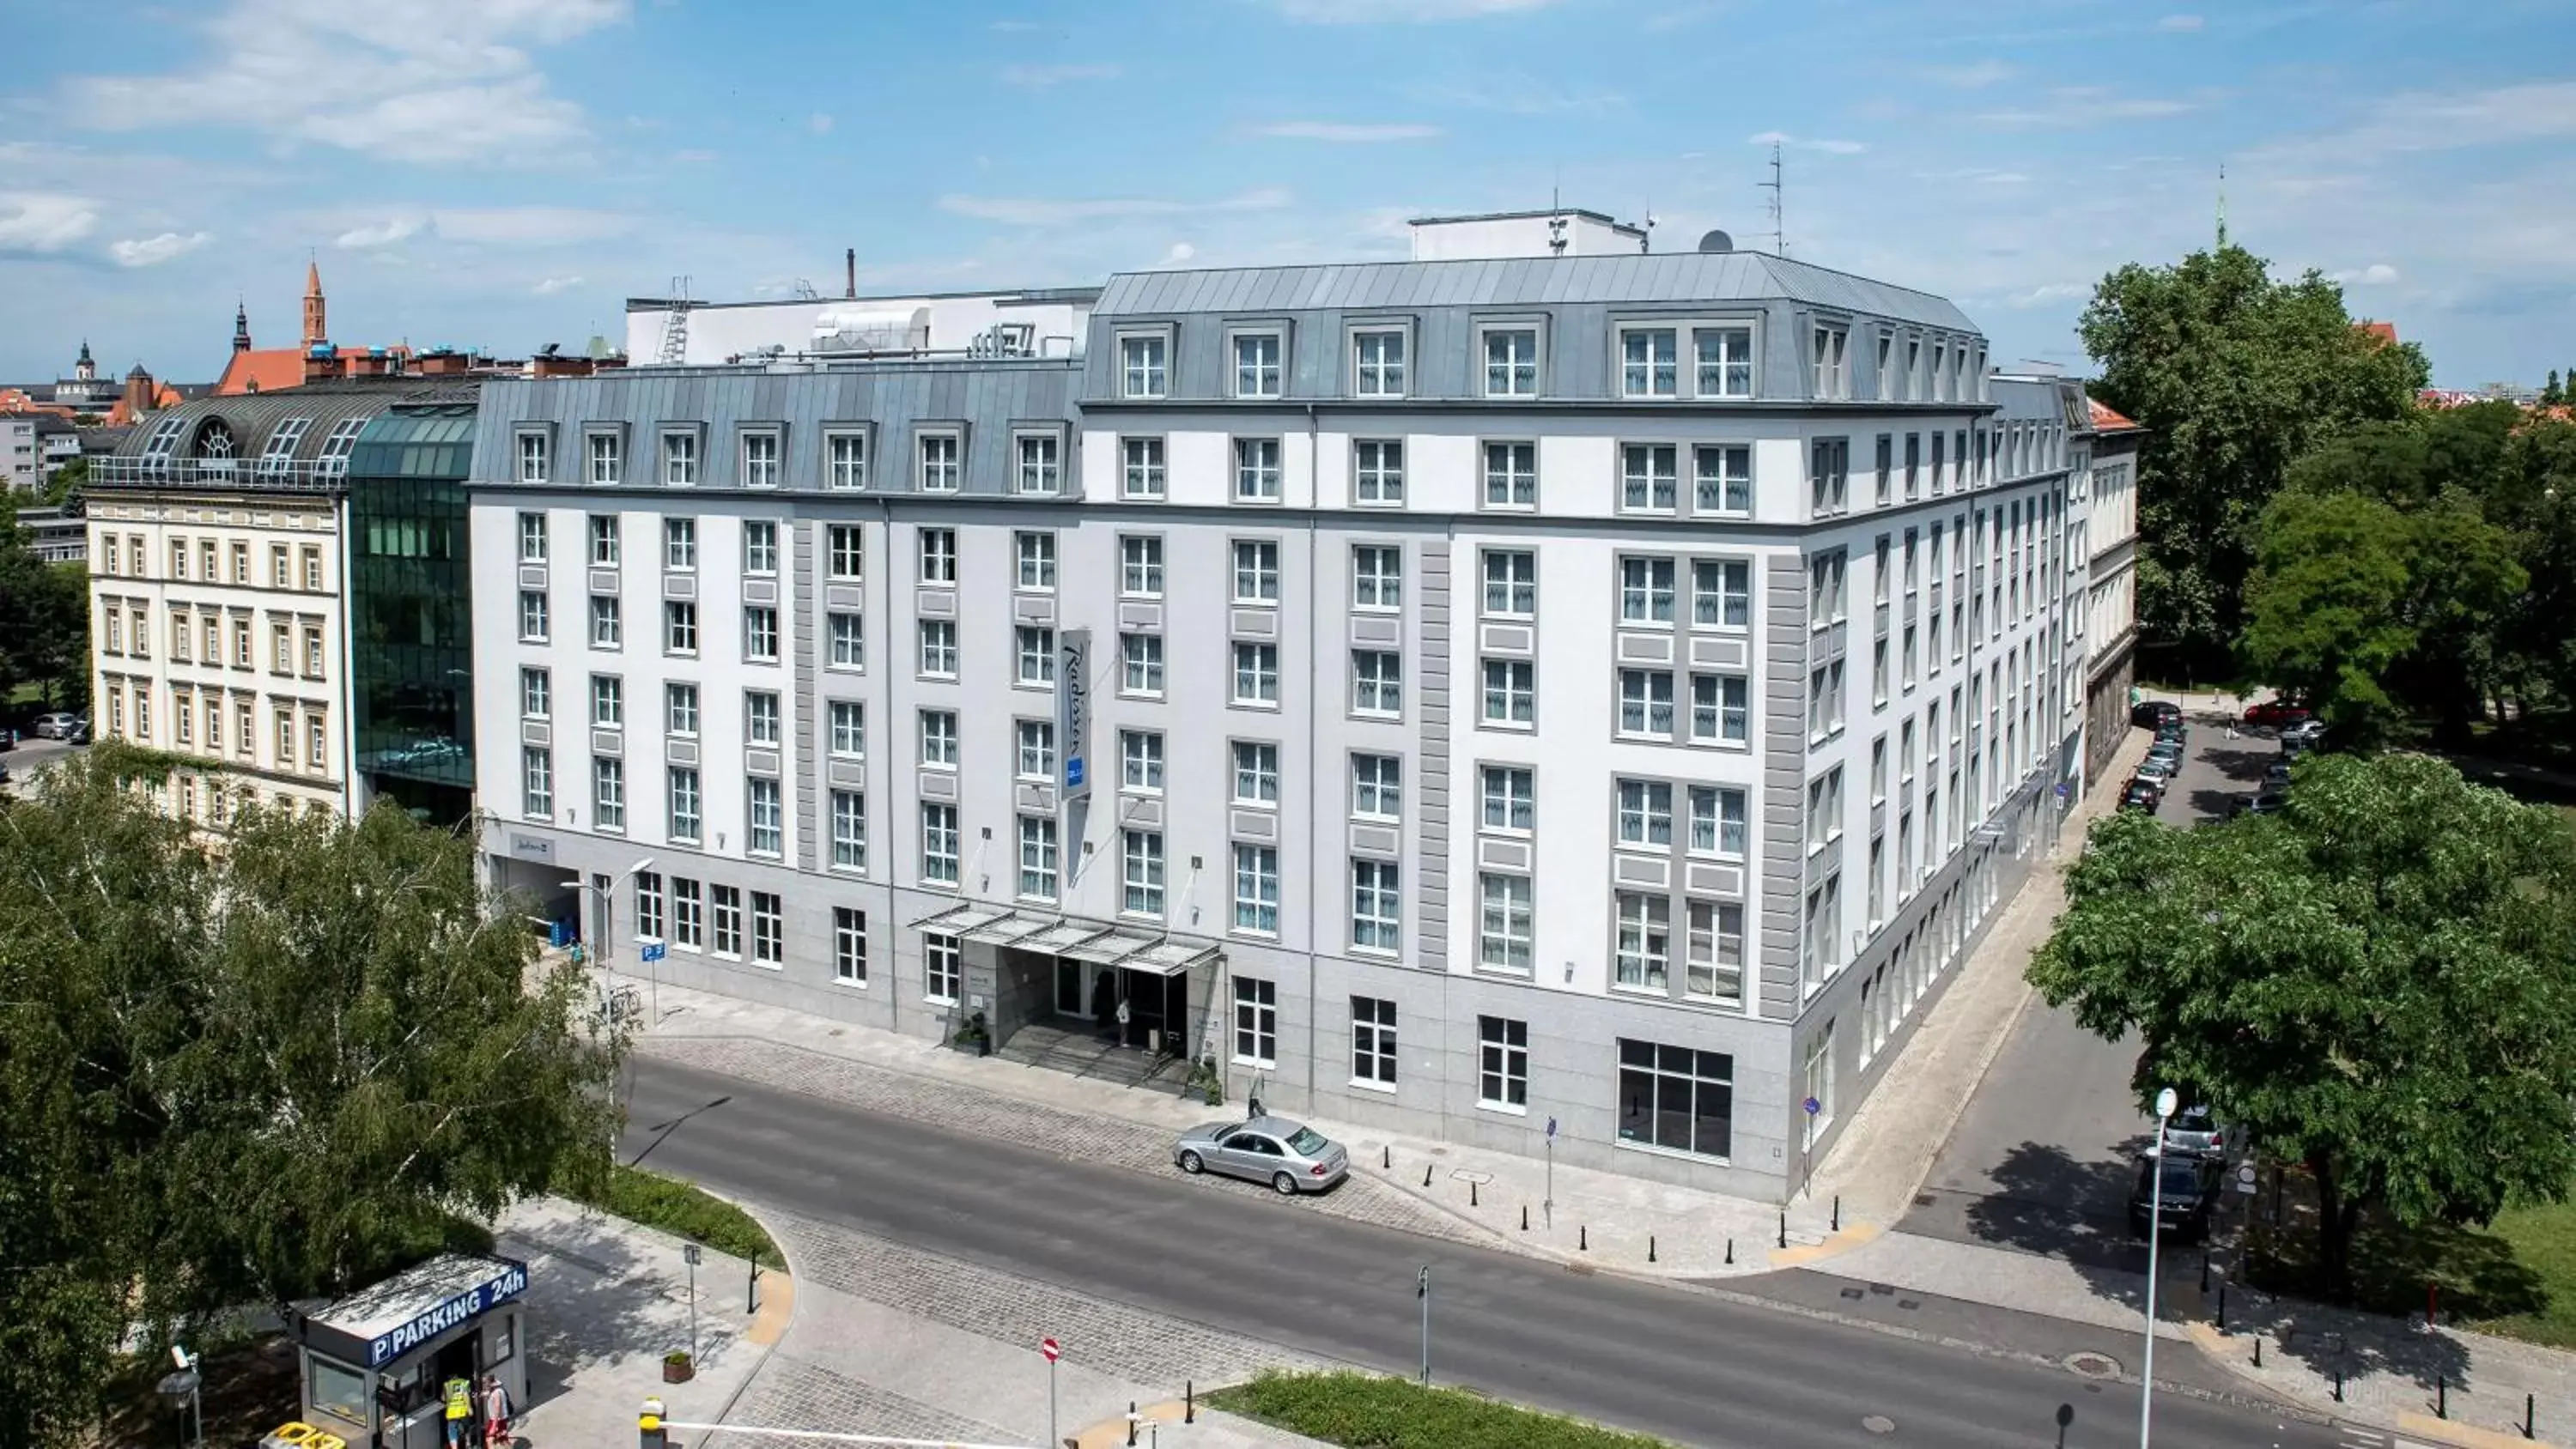 Property building in Radisson Blu Hotel Wroclaw